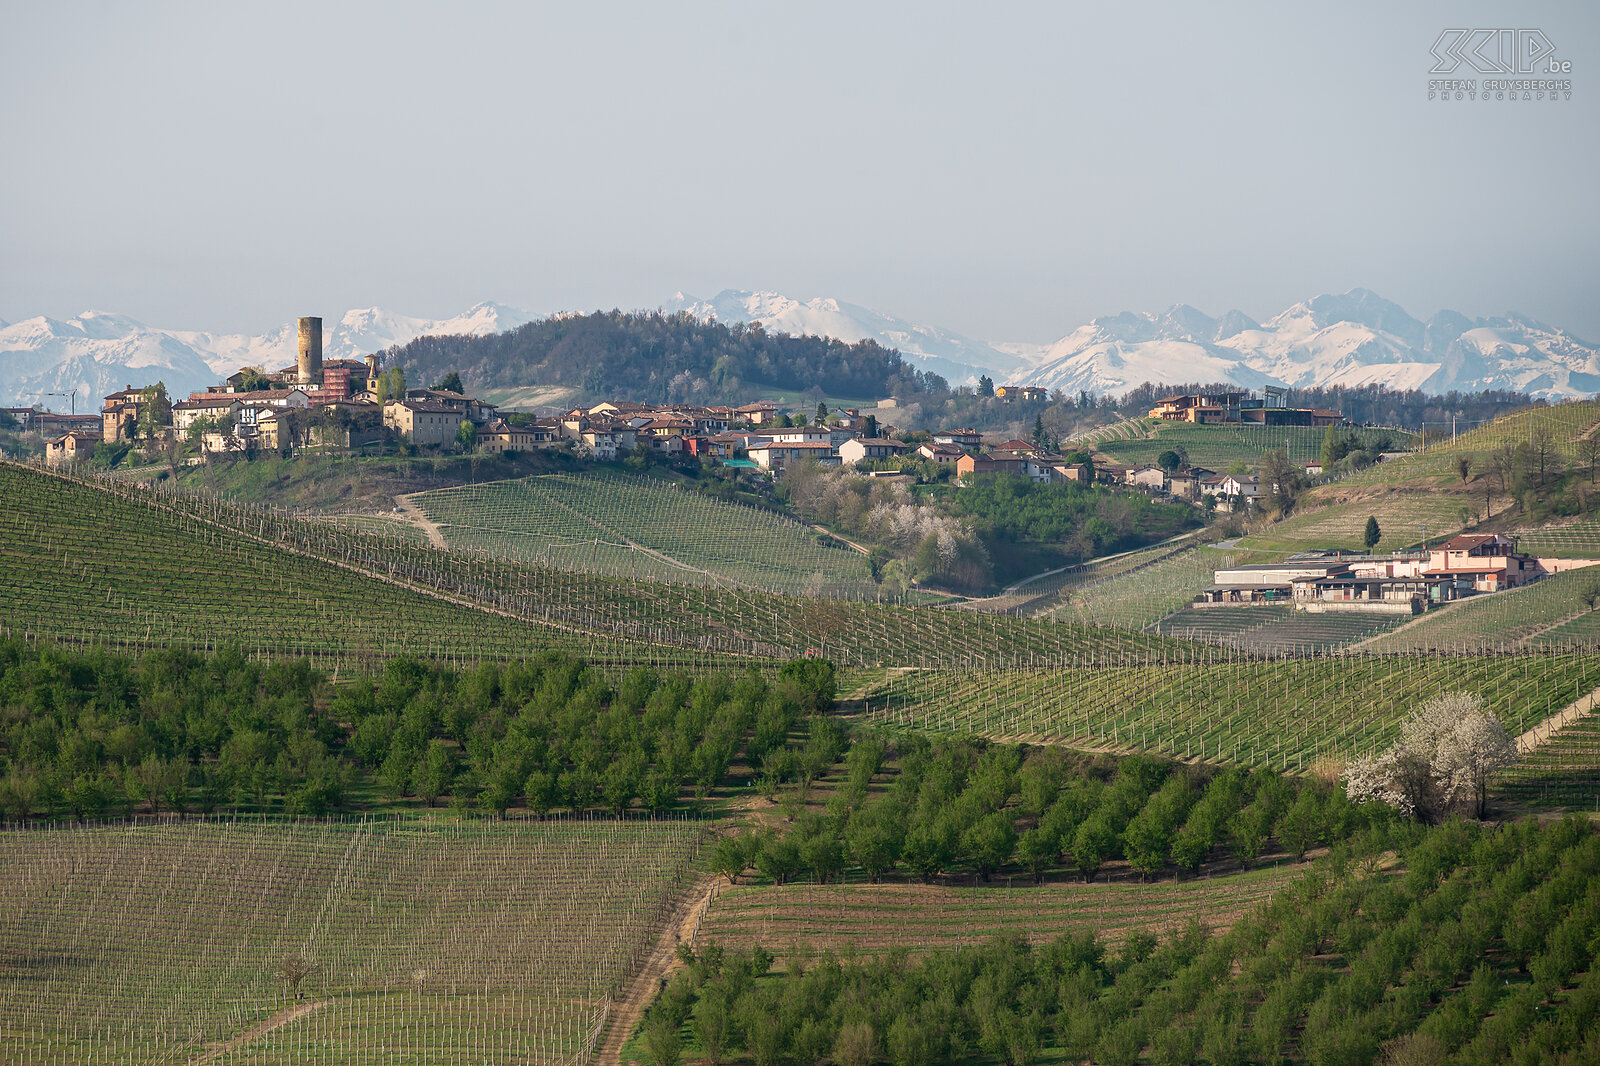 Langhe regio De prachtige Langhe Roero Monferrato regio met de vele beroemde wijngaarden en pittoreske dorpjes op de heuvels en in de verte de nog besneeuwde Alpen toppen Stefan Cruysberghs